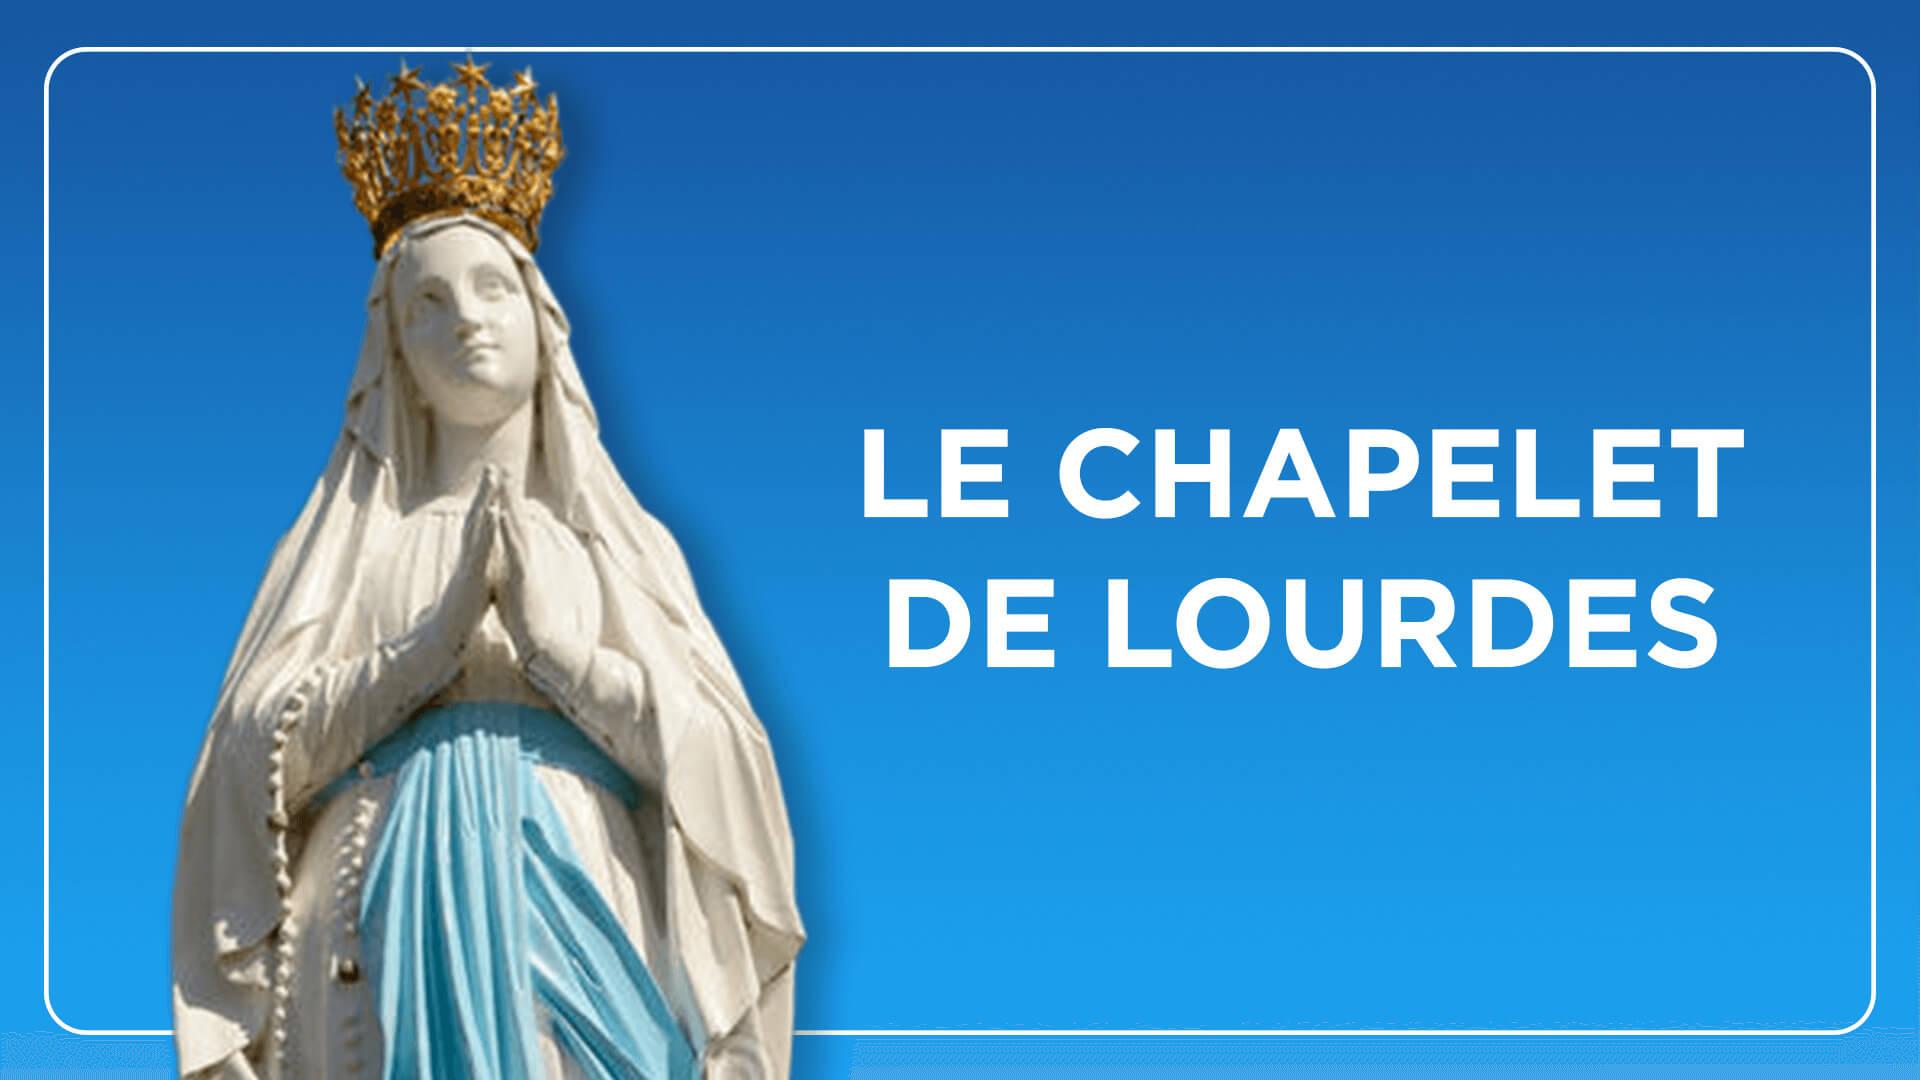 Chapelet de nuit de Lourdes